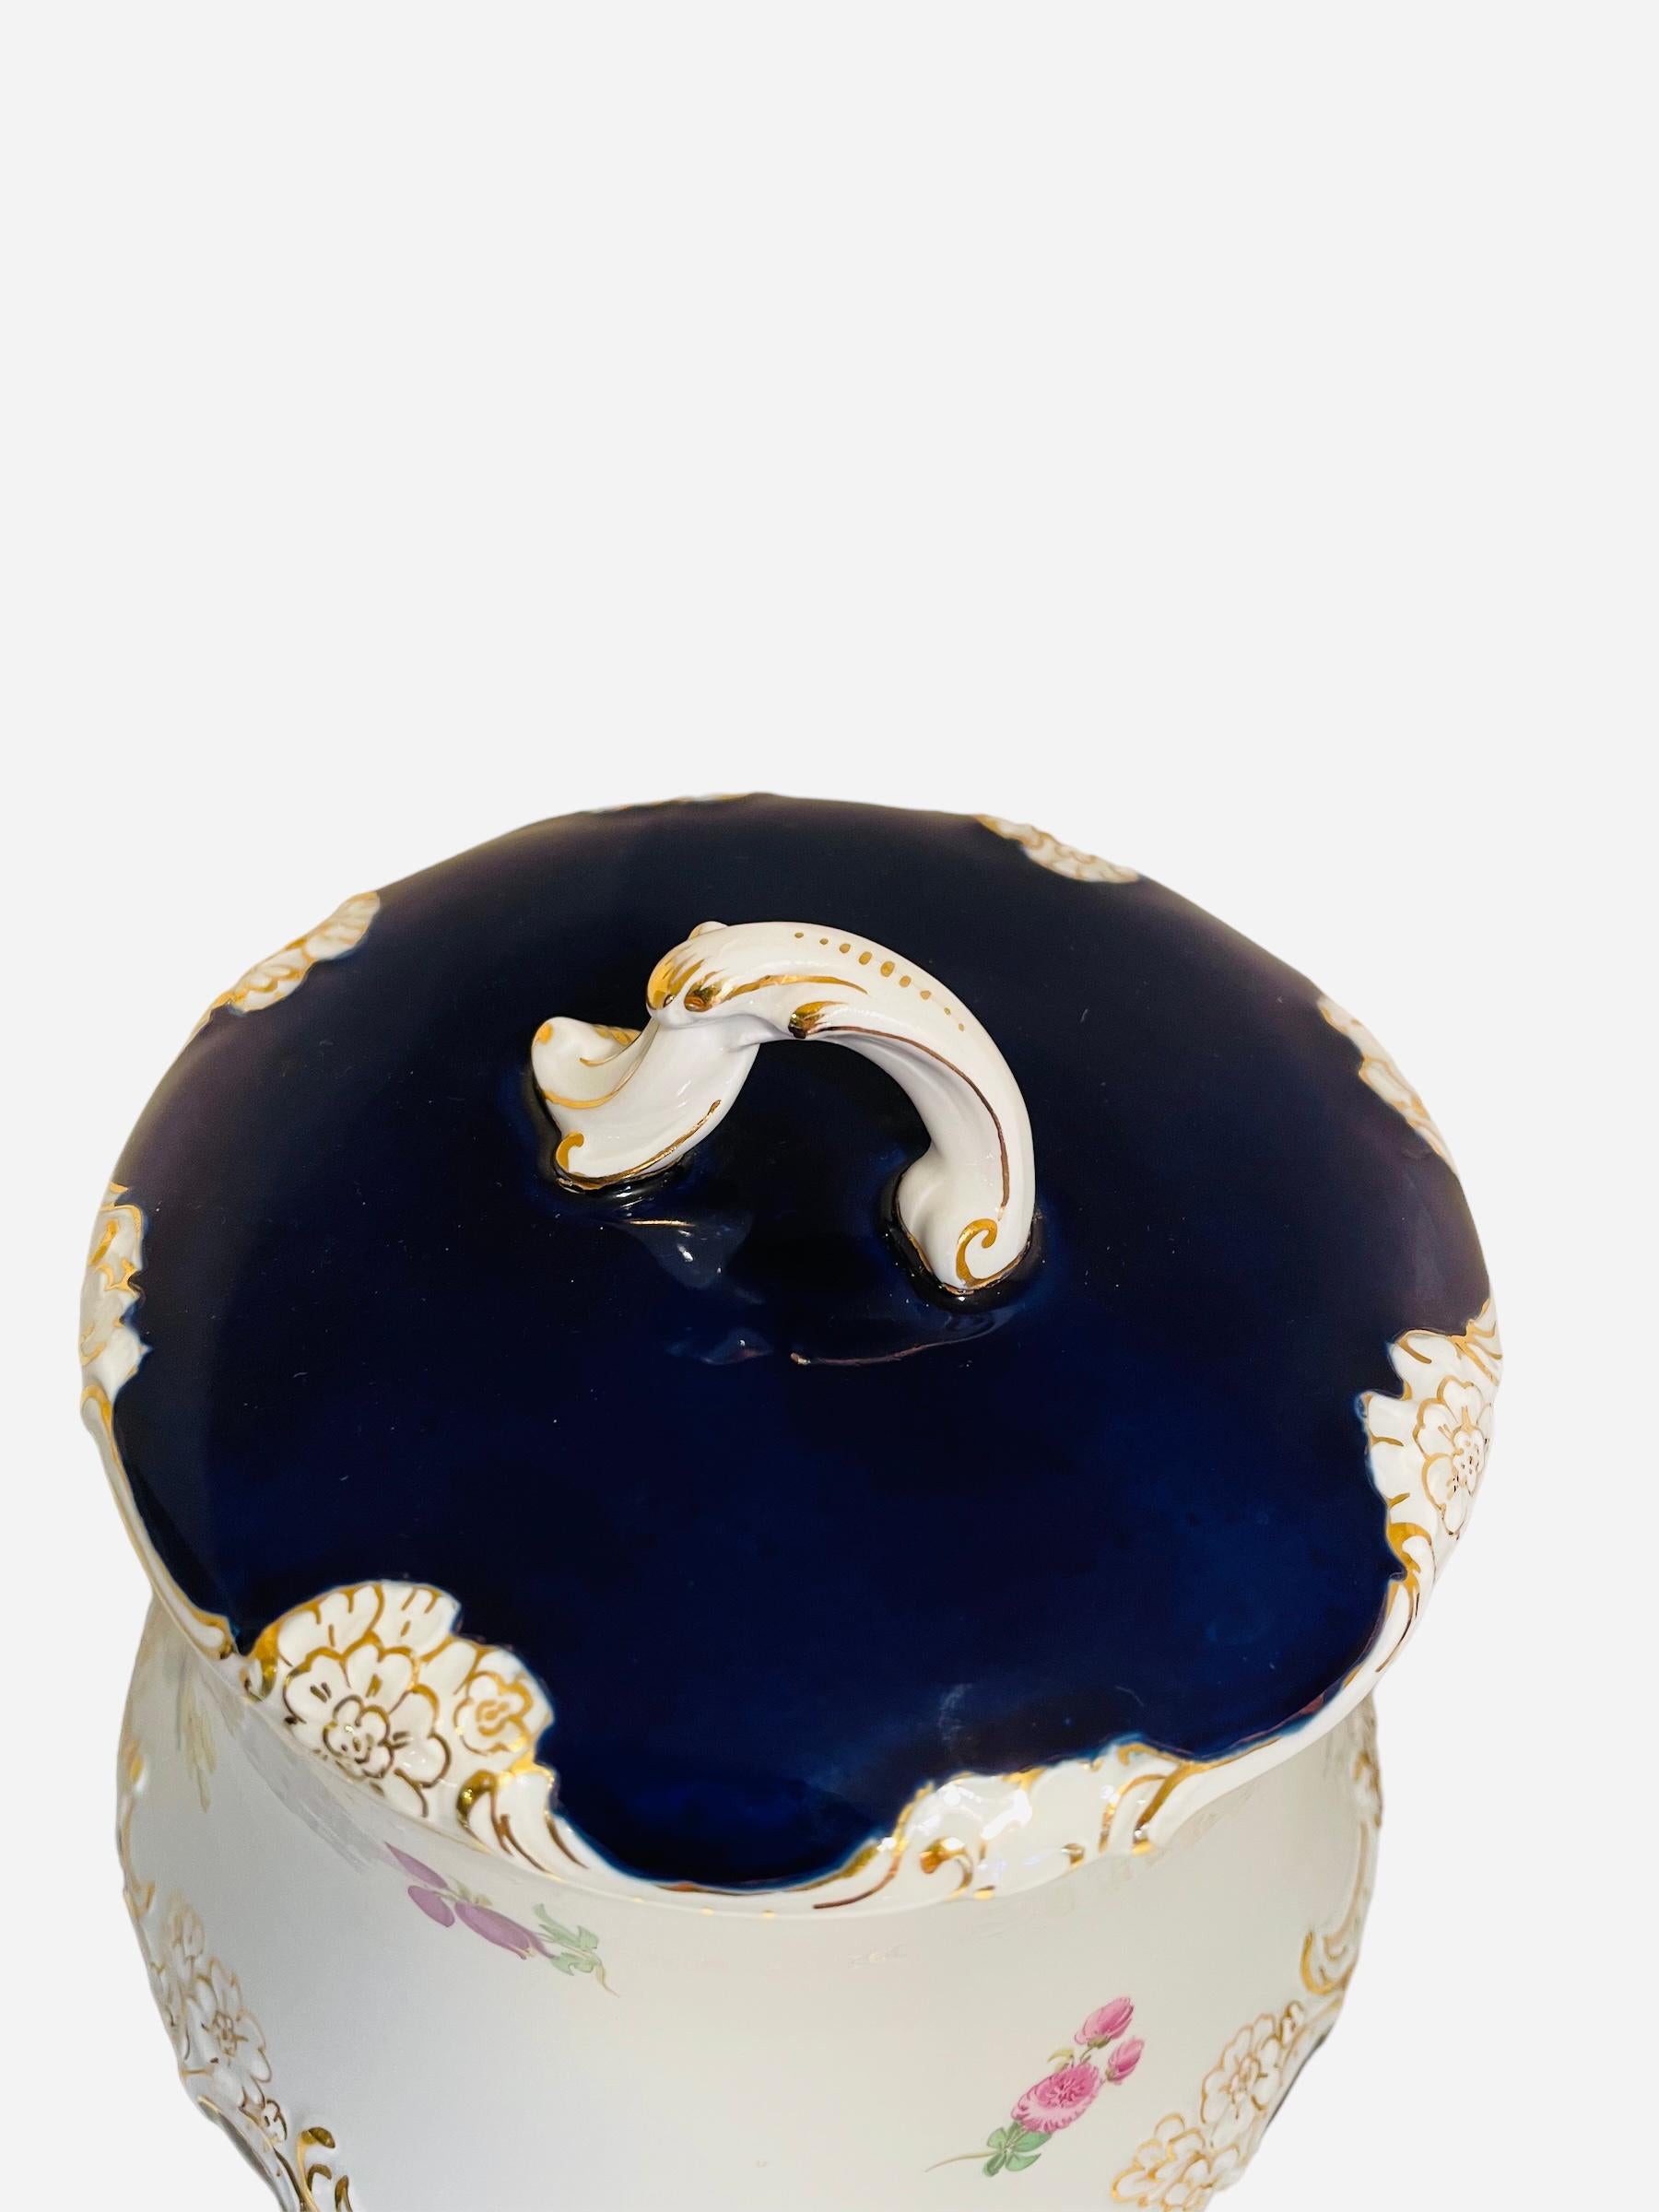 Il s'agit d'une jarre à biscuits/gingembre en porcelaine de Meissen du 20e siècle. Whiting représente une jarre en forme de tonneau peinte à la main en blanc sur le fond et en bleu cobalt sur le couvercle et le fond. De petits bouquets de fleurs